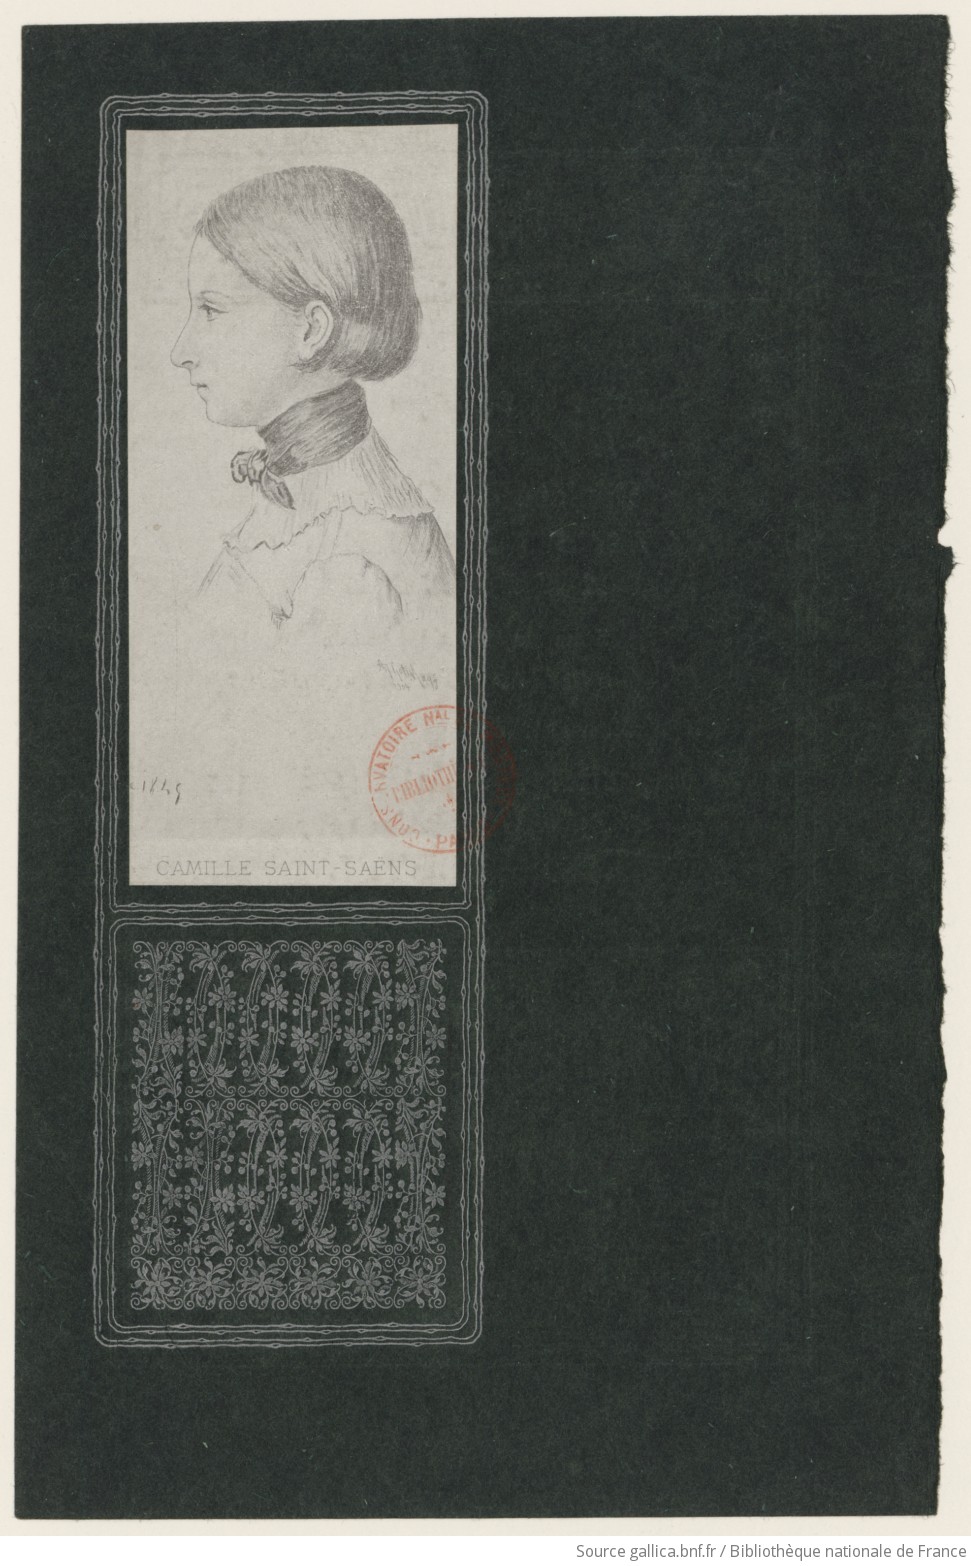 Camille Saint-Saëns / A. Hotin aqf. 1904 ; [d'après un dessin de 1849]